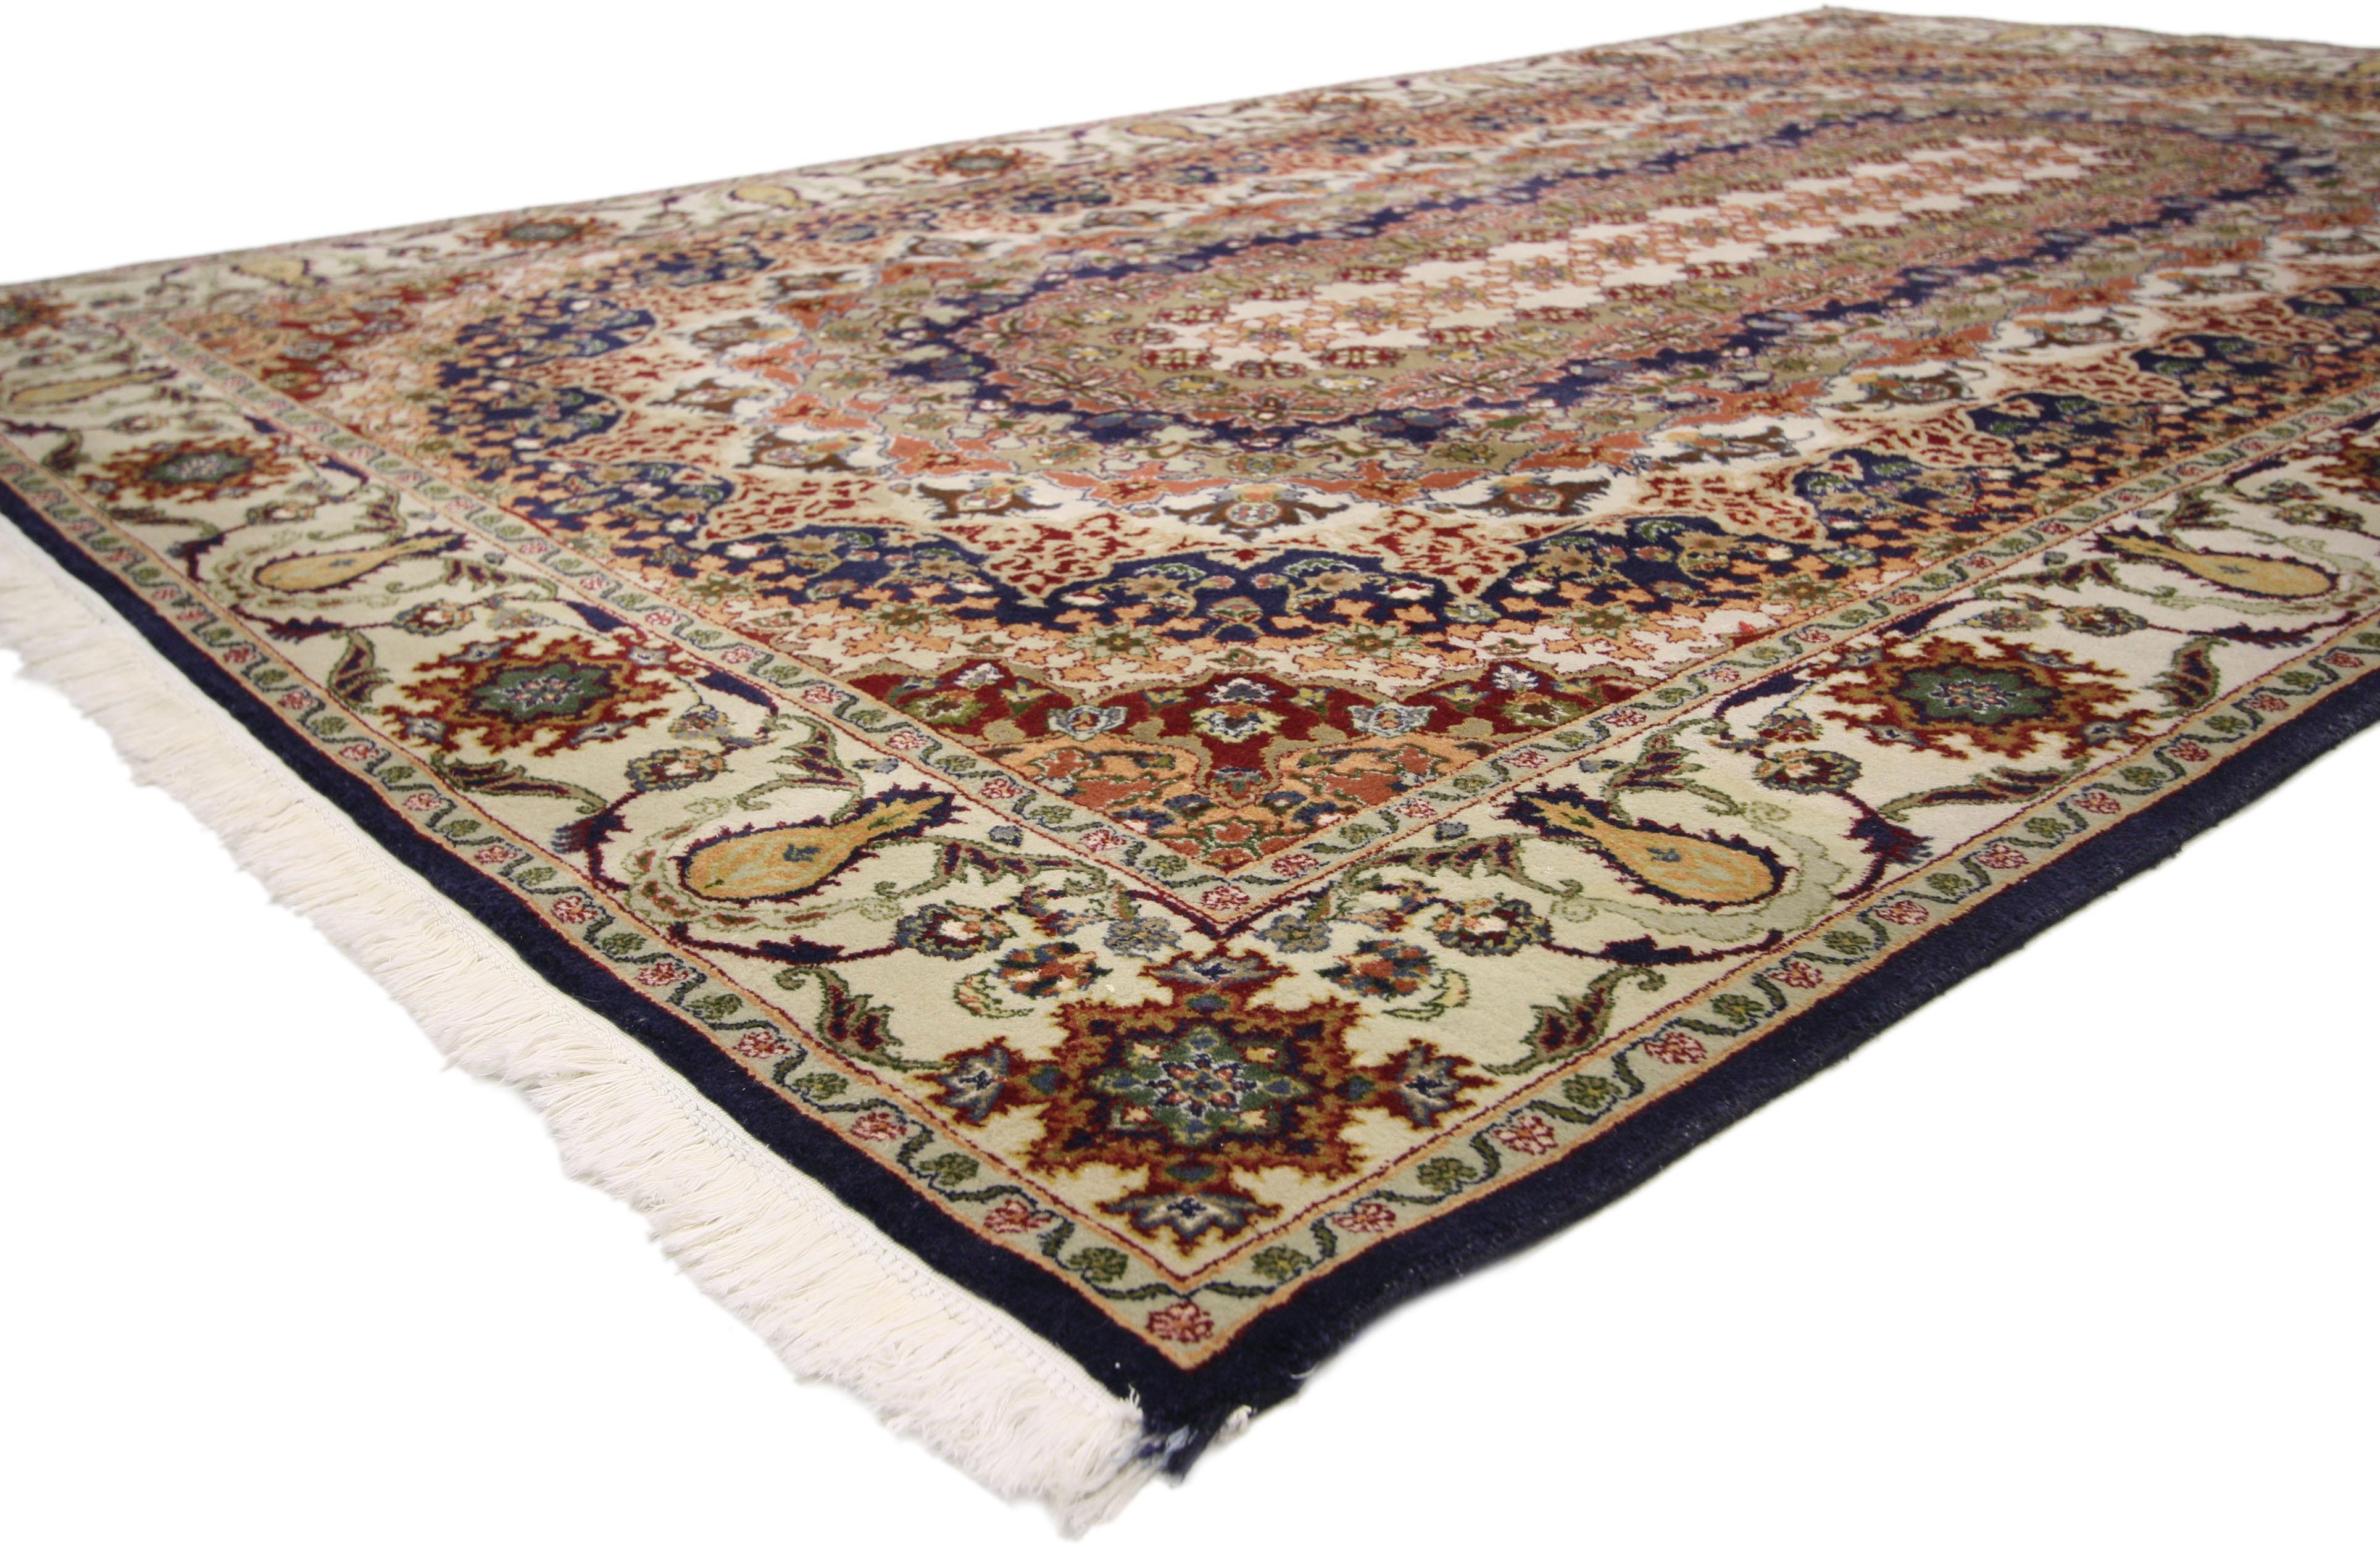 76712 Tapis pakistanais vintage Isfahan, 06'06 x 10'00. 
Intricate, coloré et symétrique, ce tapis pakistanais vintage est une vision captivante de la beauté du tissage. Le design unique de l'Ispahan et la palette de couleurs terreuses de cette